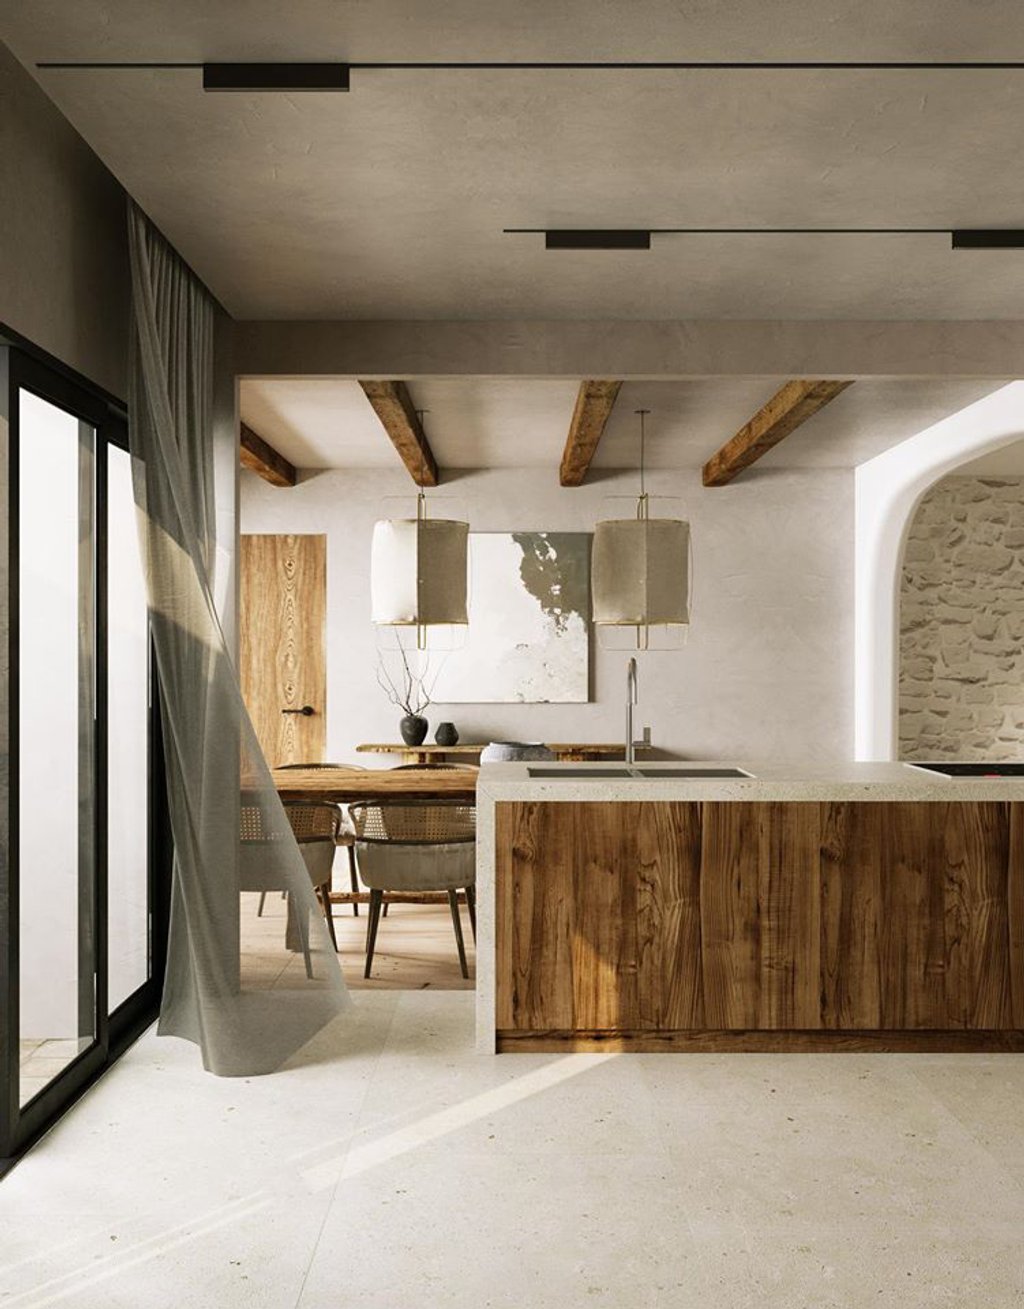 Đảo bếp và bàn ăn cũng vẫn sử dụng tông màu trắng, xám với các vật dụng bằng gỗ. Đặc biệt, không gian này được đặt cạnh cửa sổ để hứng ánh sáng tự nhiên.